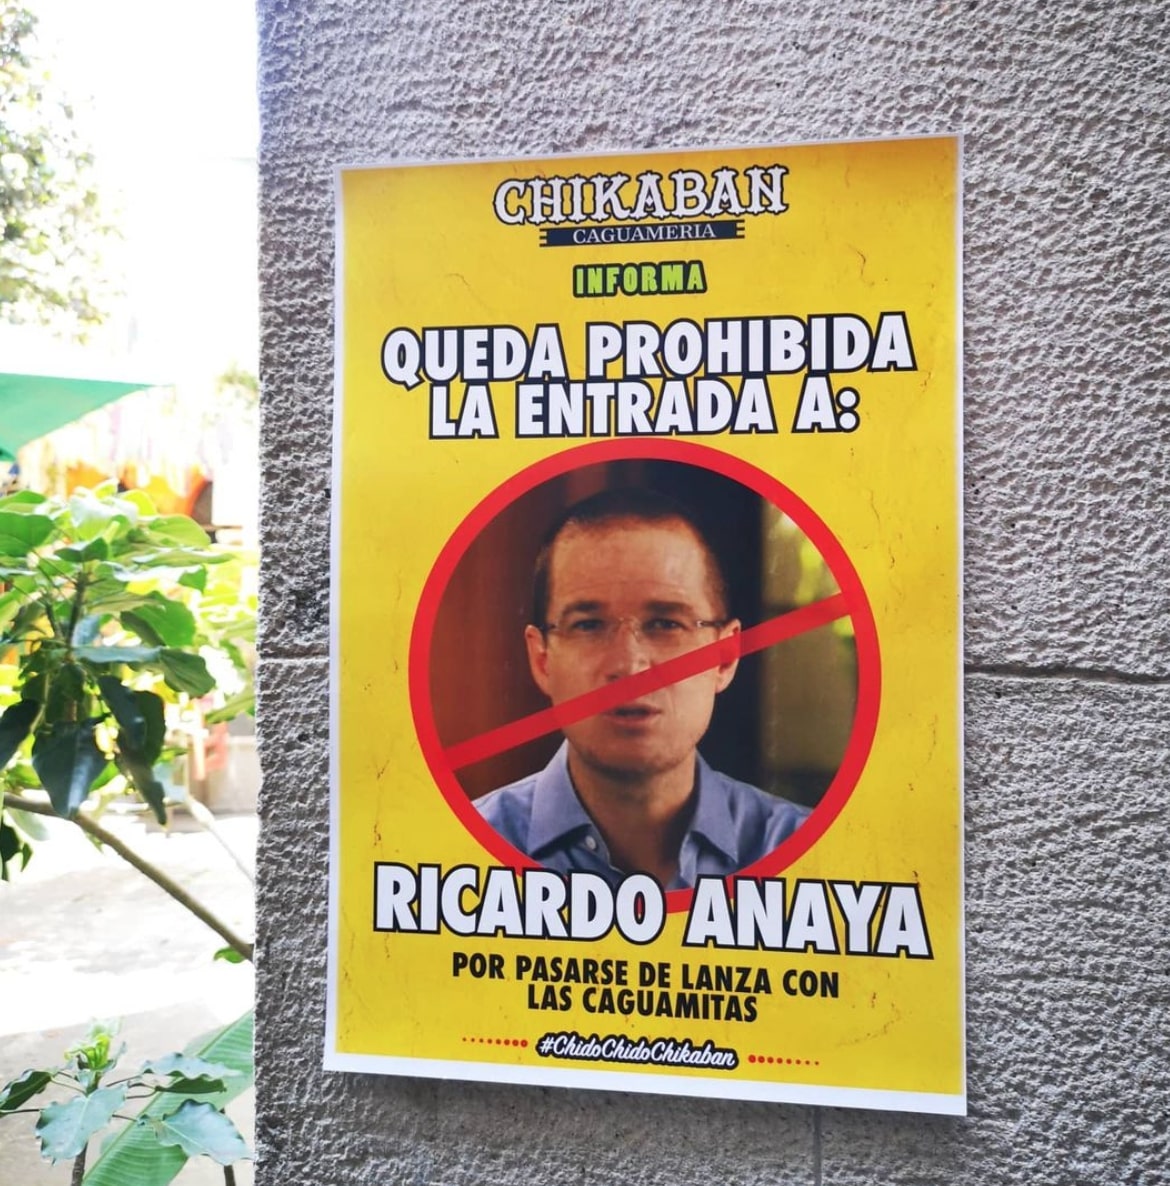 Con este cartel se dejó claro que Anaya no puede entrar (Foto: Instagram/soy_chikaban)